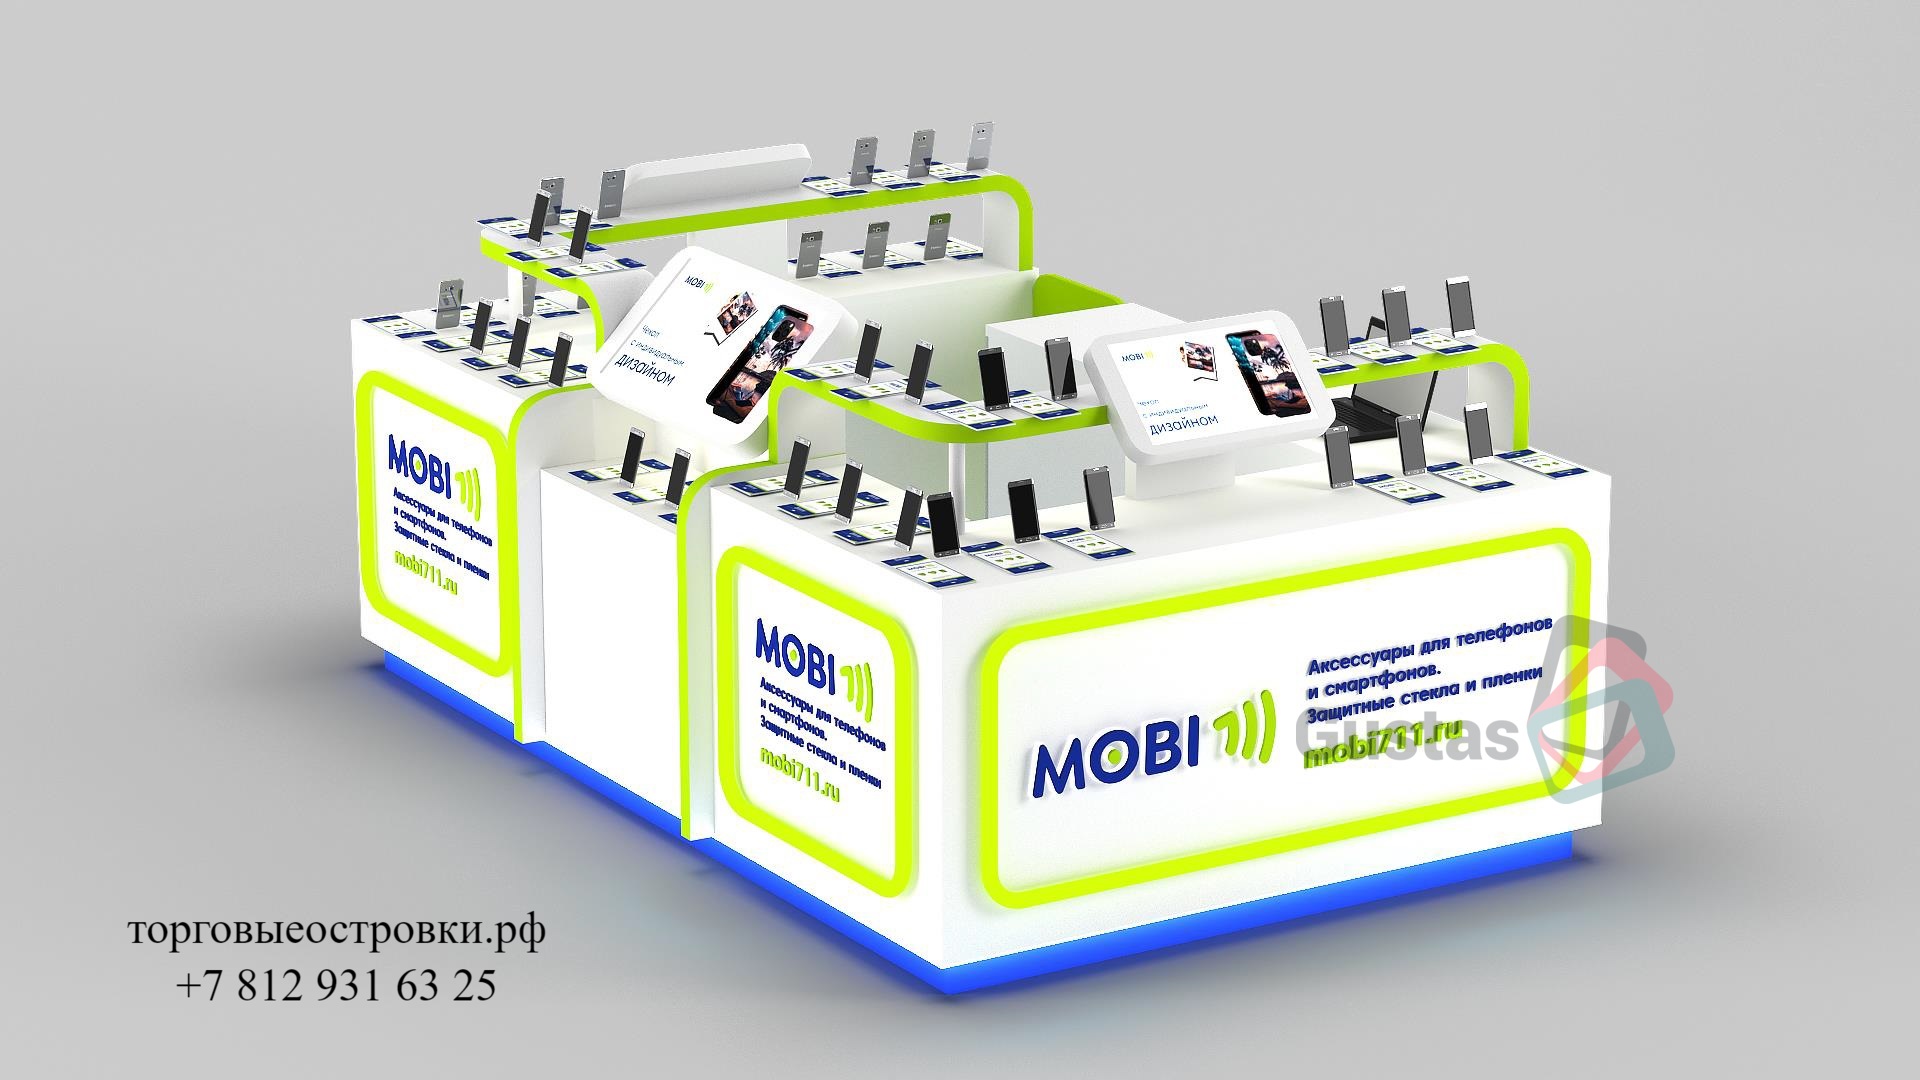 Торговый островок мобильных аксессуаров Mobi